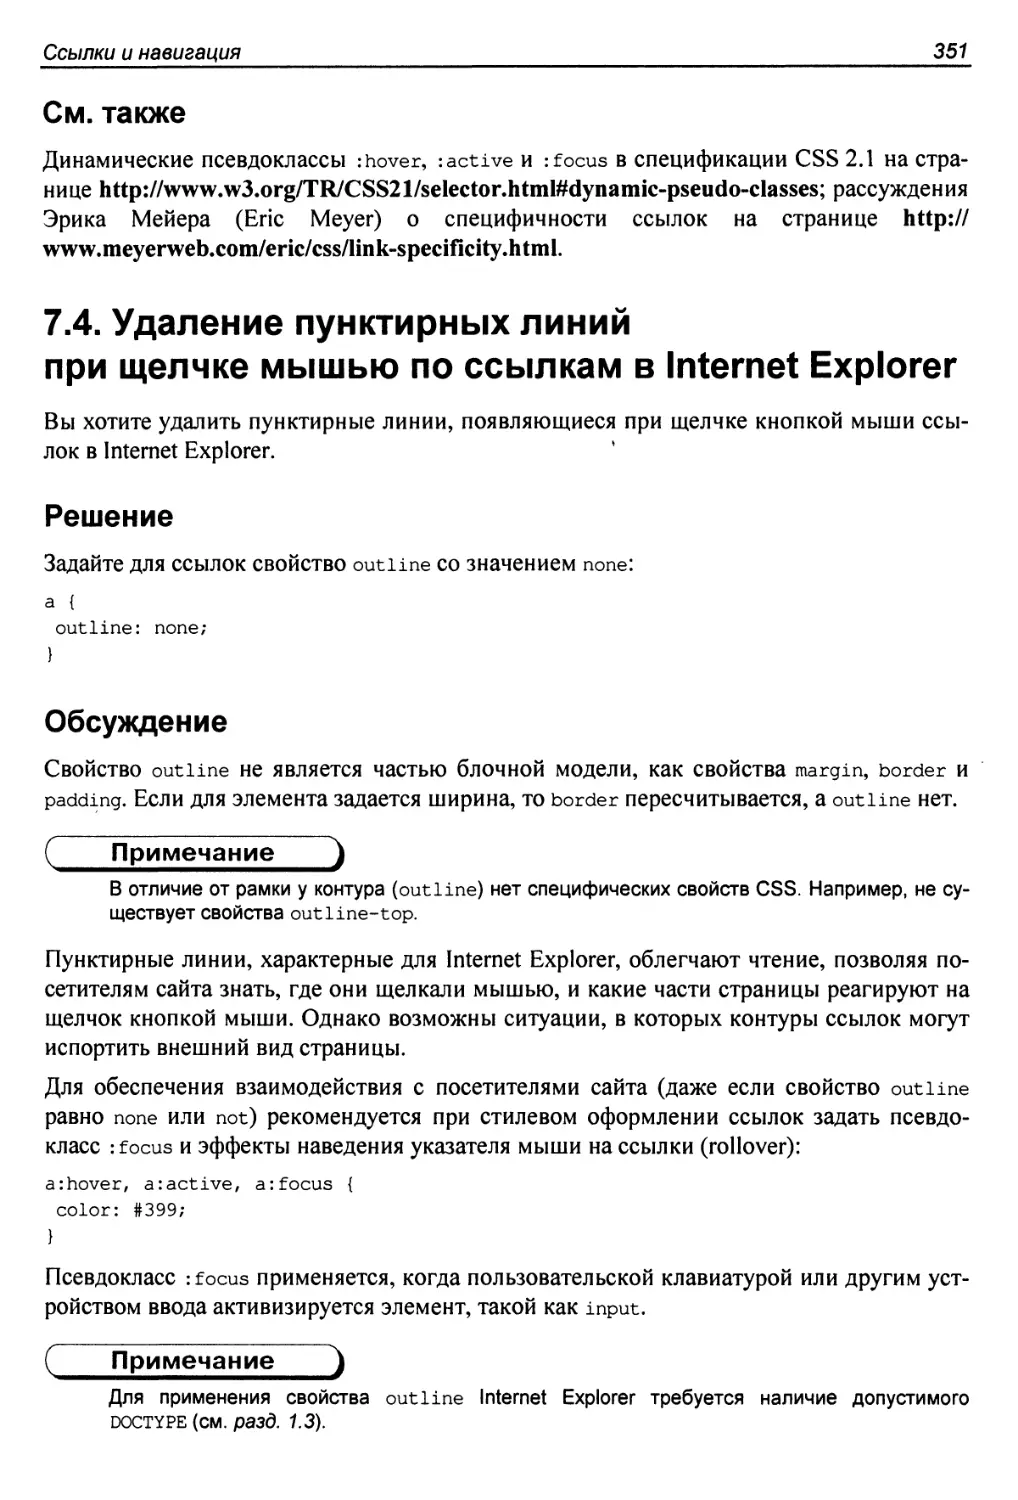 7.4. Удаление пунктирных линий при щелчке мышью по ссылкам в Internet Explorer